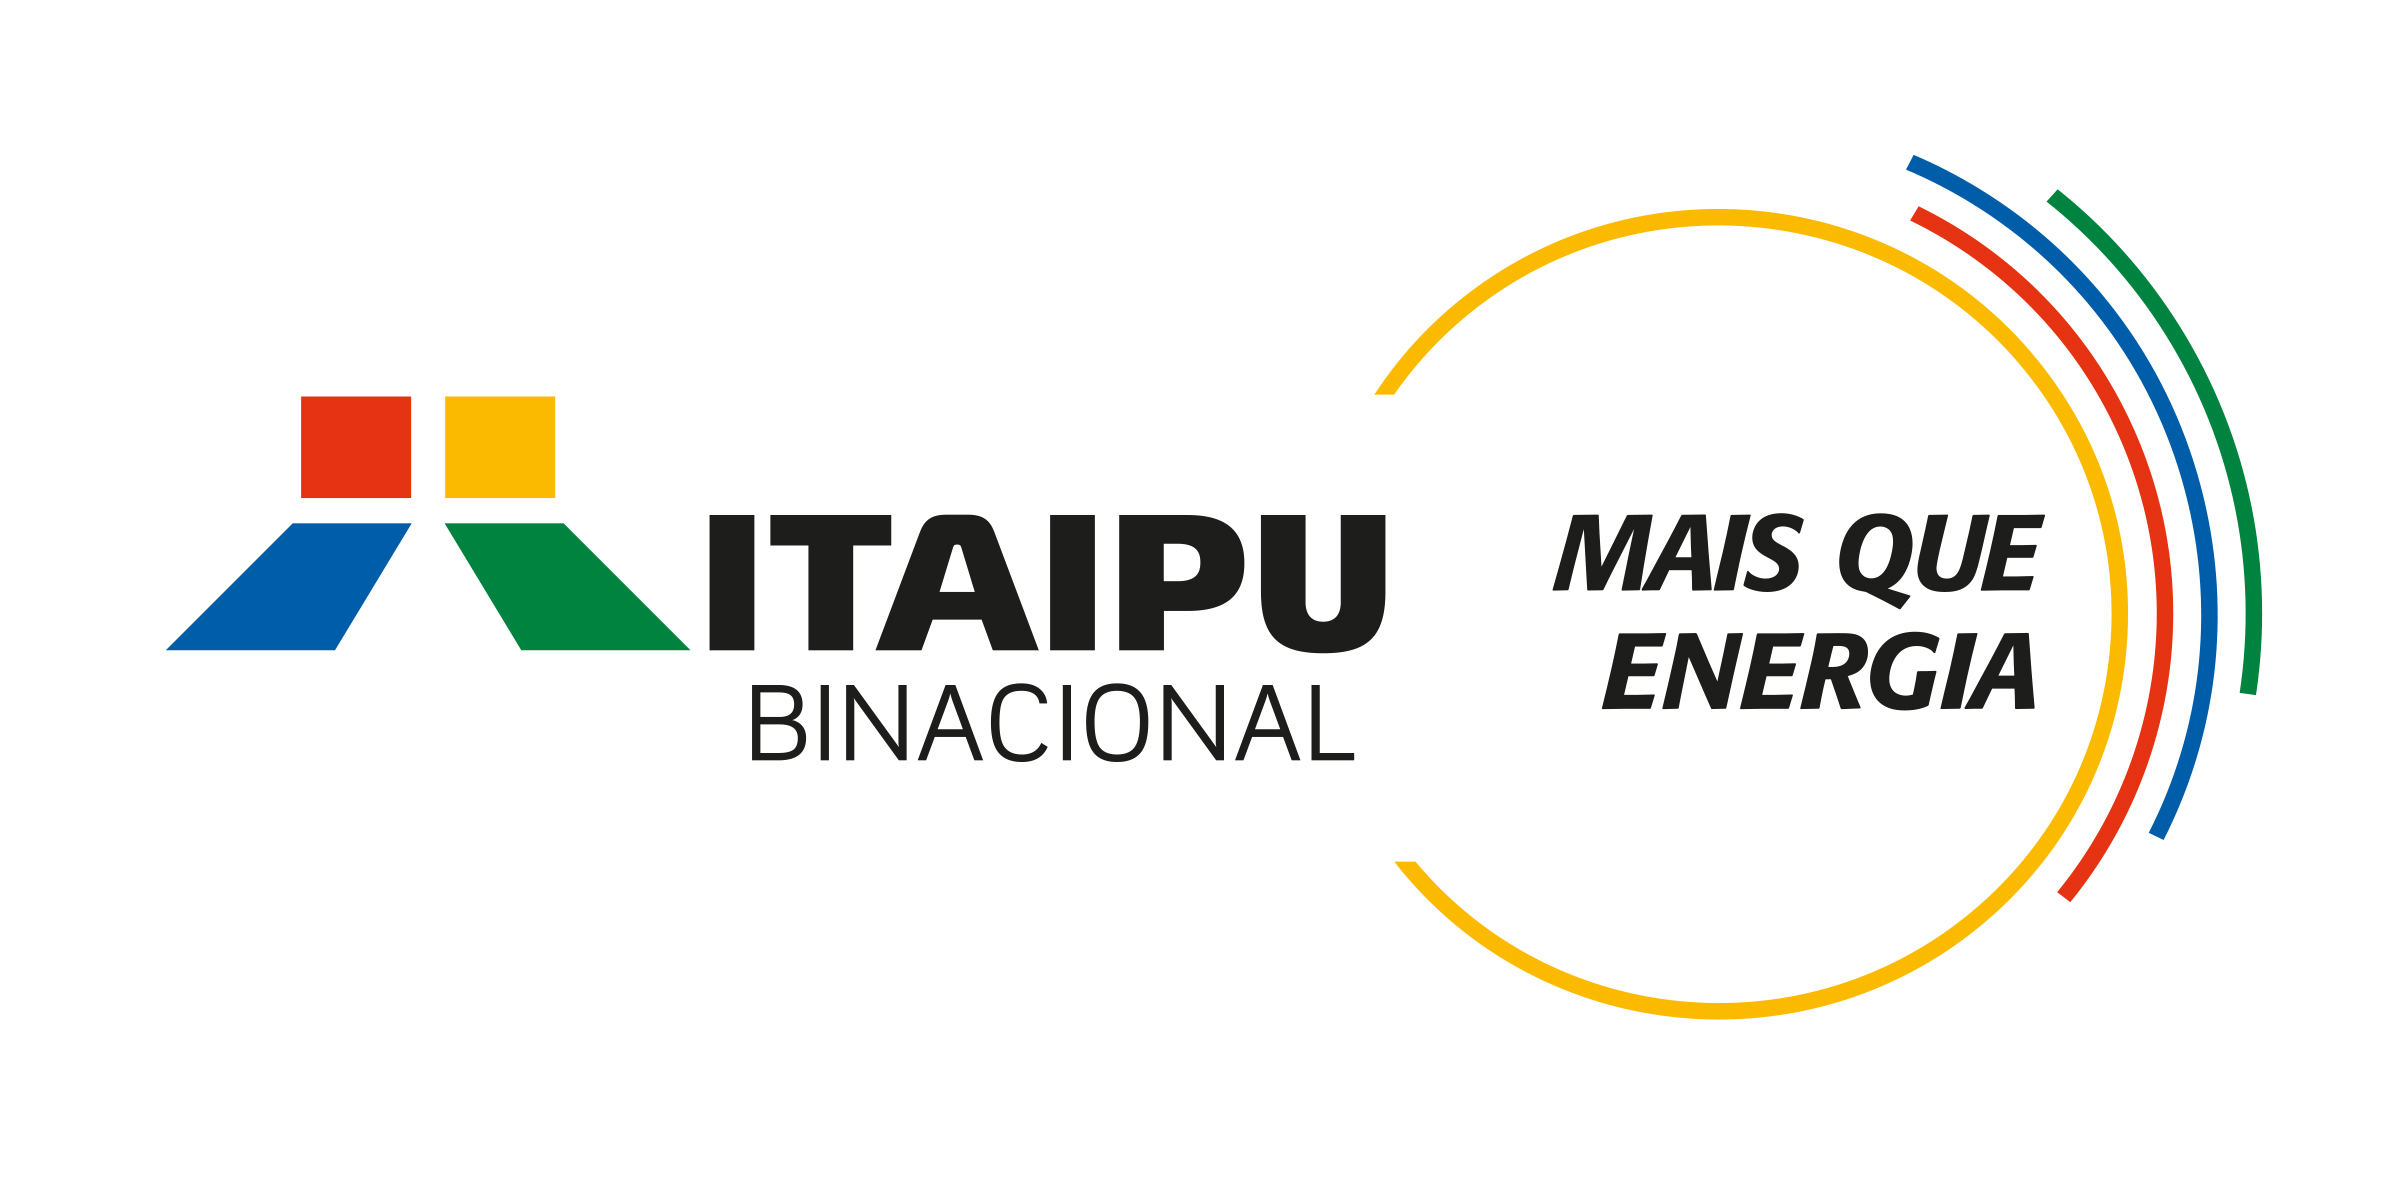 Inscrição no Programa Itaipu Mais que Energia pode garantir recursos para Nova Andradina